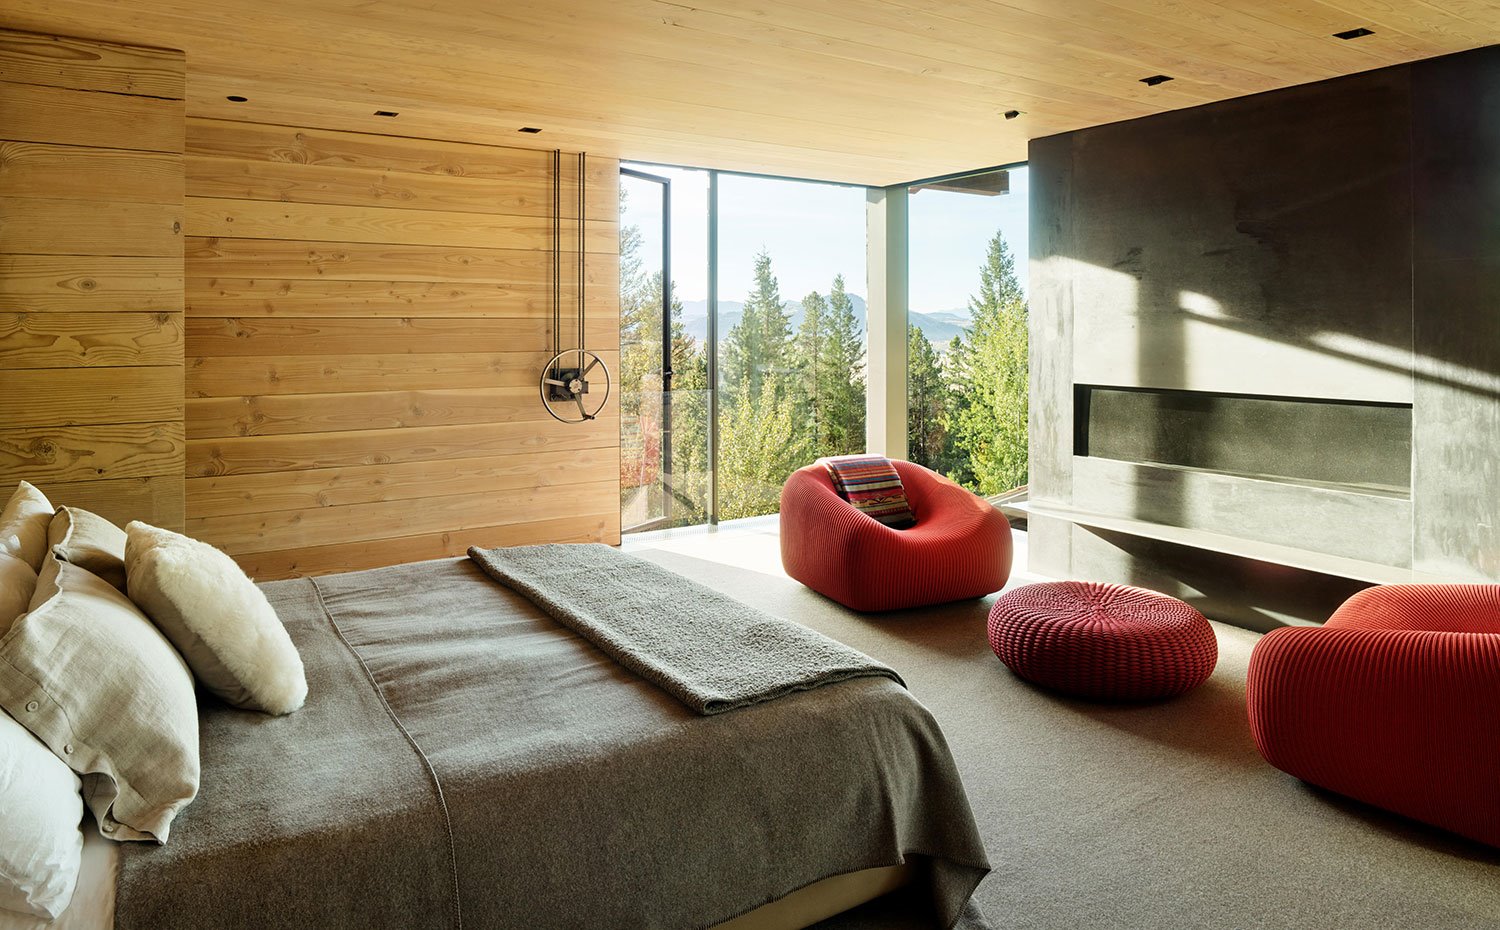 Dormitorio con chimenea, butacas en naranja, paredes y techos en madera, lencería de lino